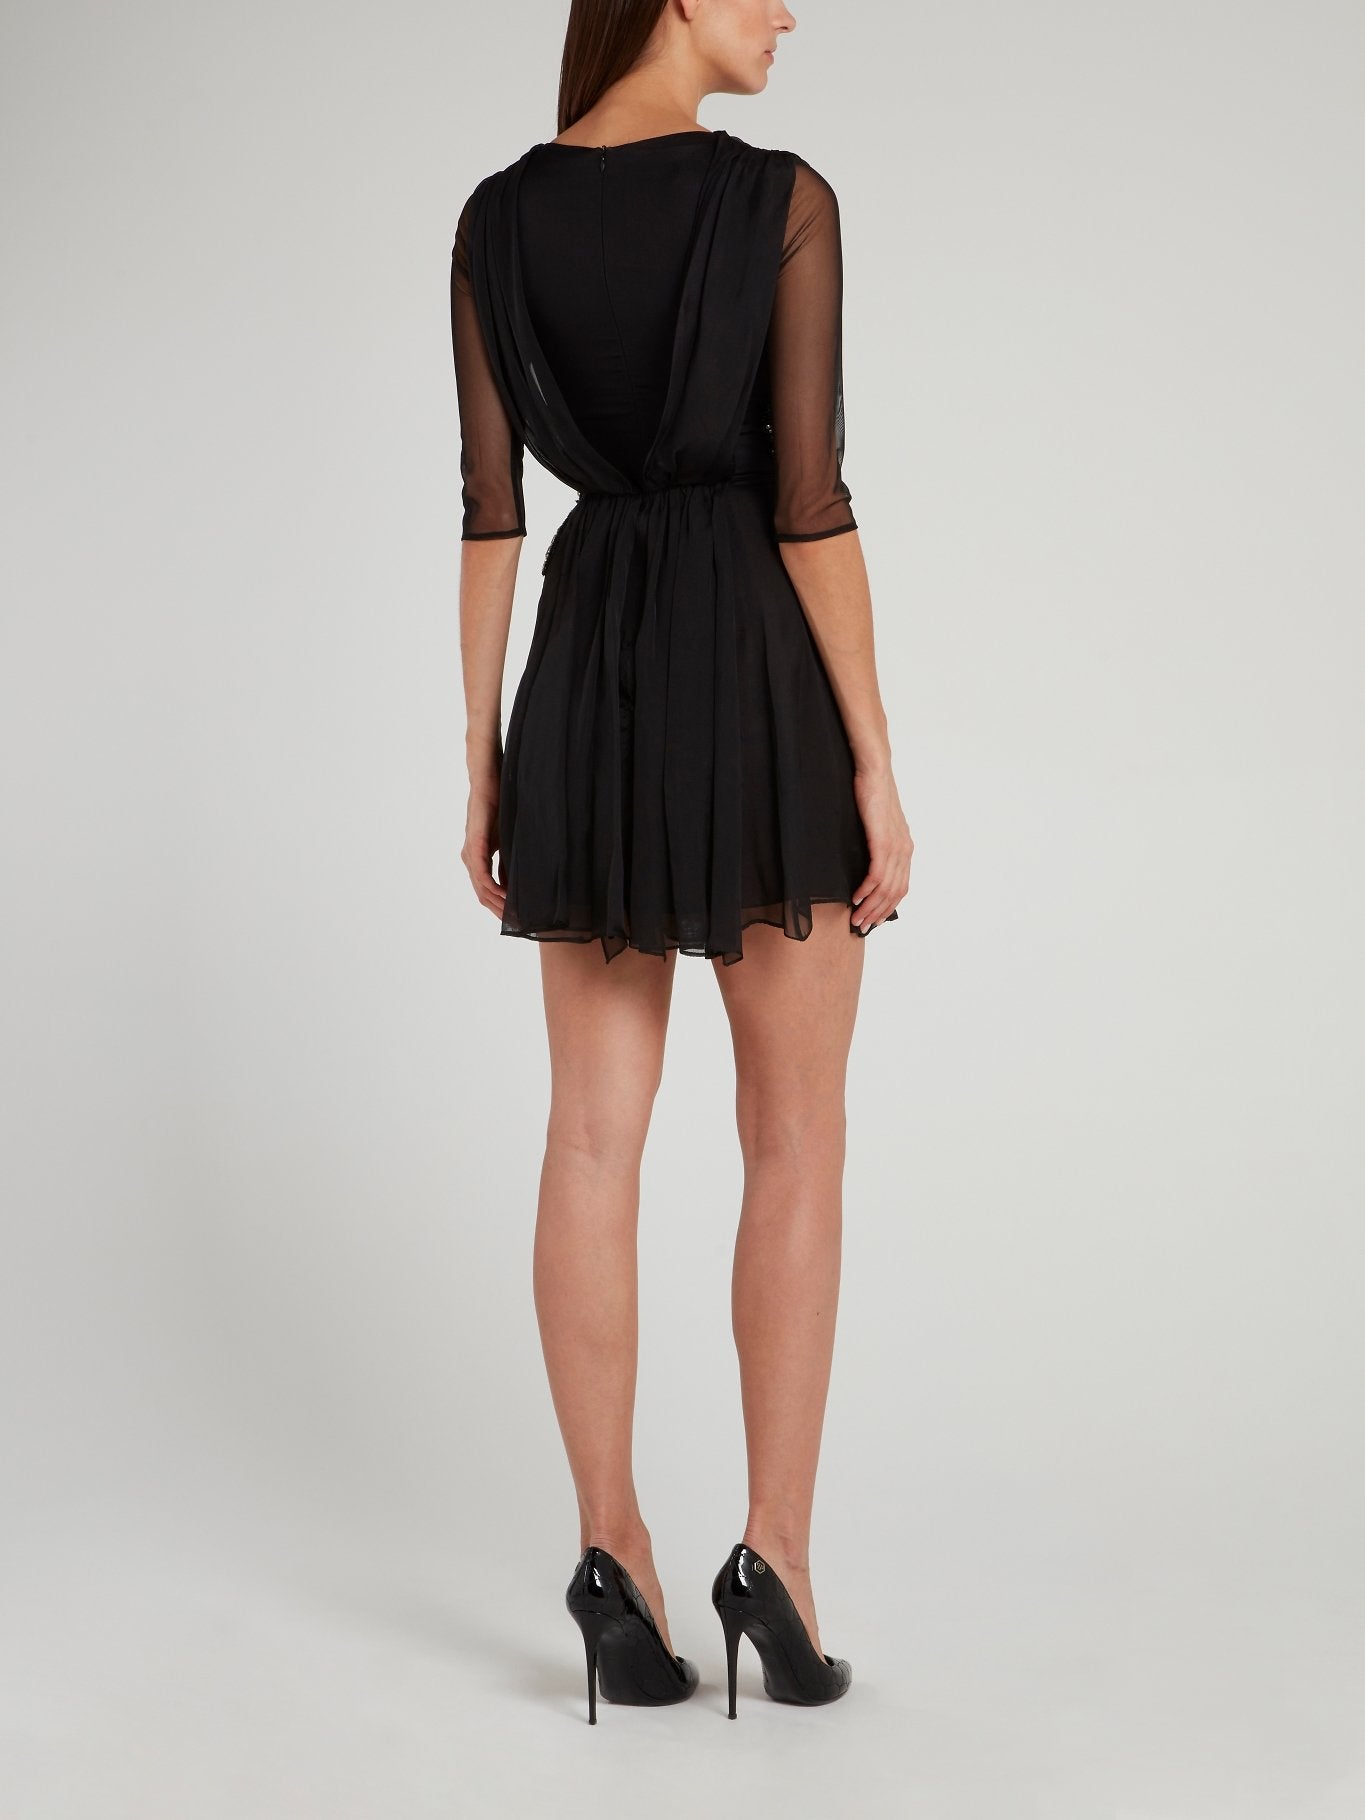 Черное платье-мини с оборками и прозрачными вставками